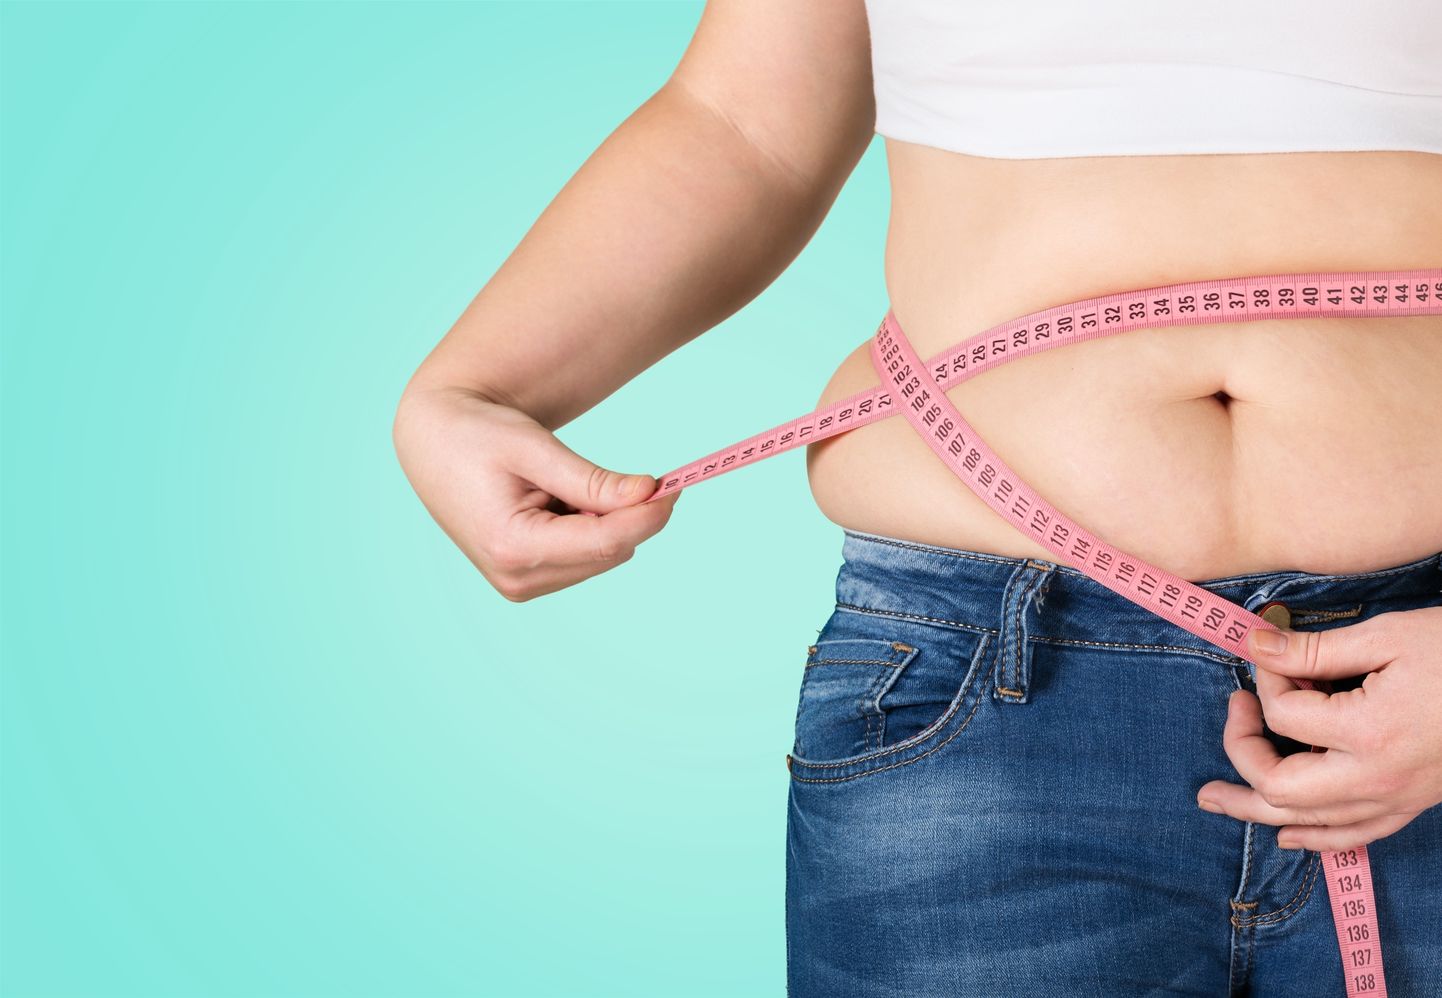 Kui kehamassi indeks on 25 ja 29,9 vahel, siis nimetatakse seda ülekaalulisuseks ehk eelrasvumiseks. Kui aga 30 või üle selle, siis rasvumiseks, vahendab Tervise Arengu Instituut.